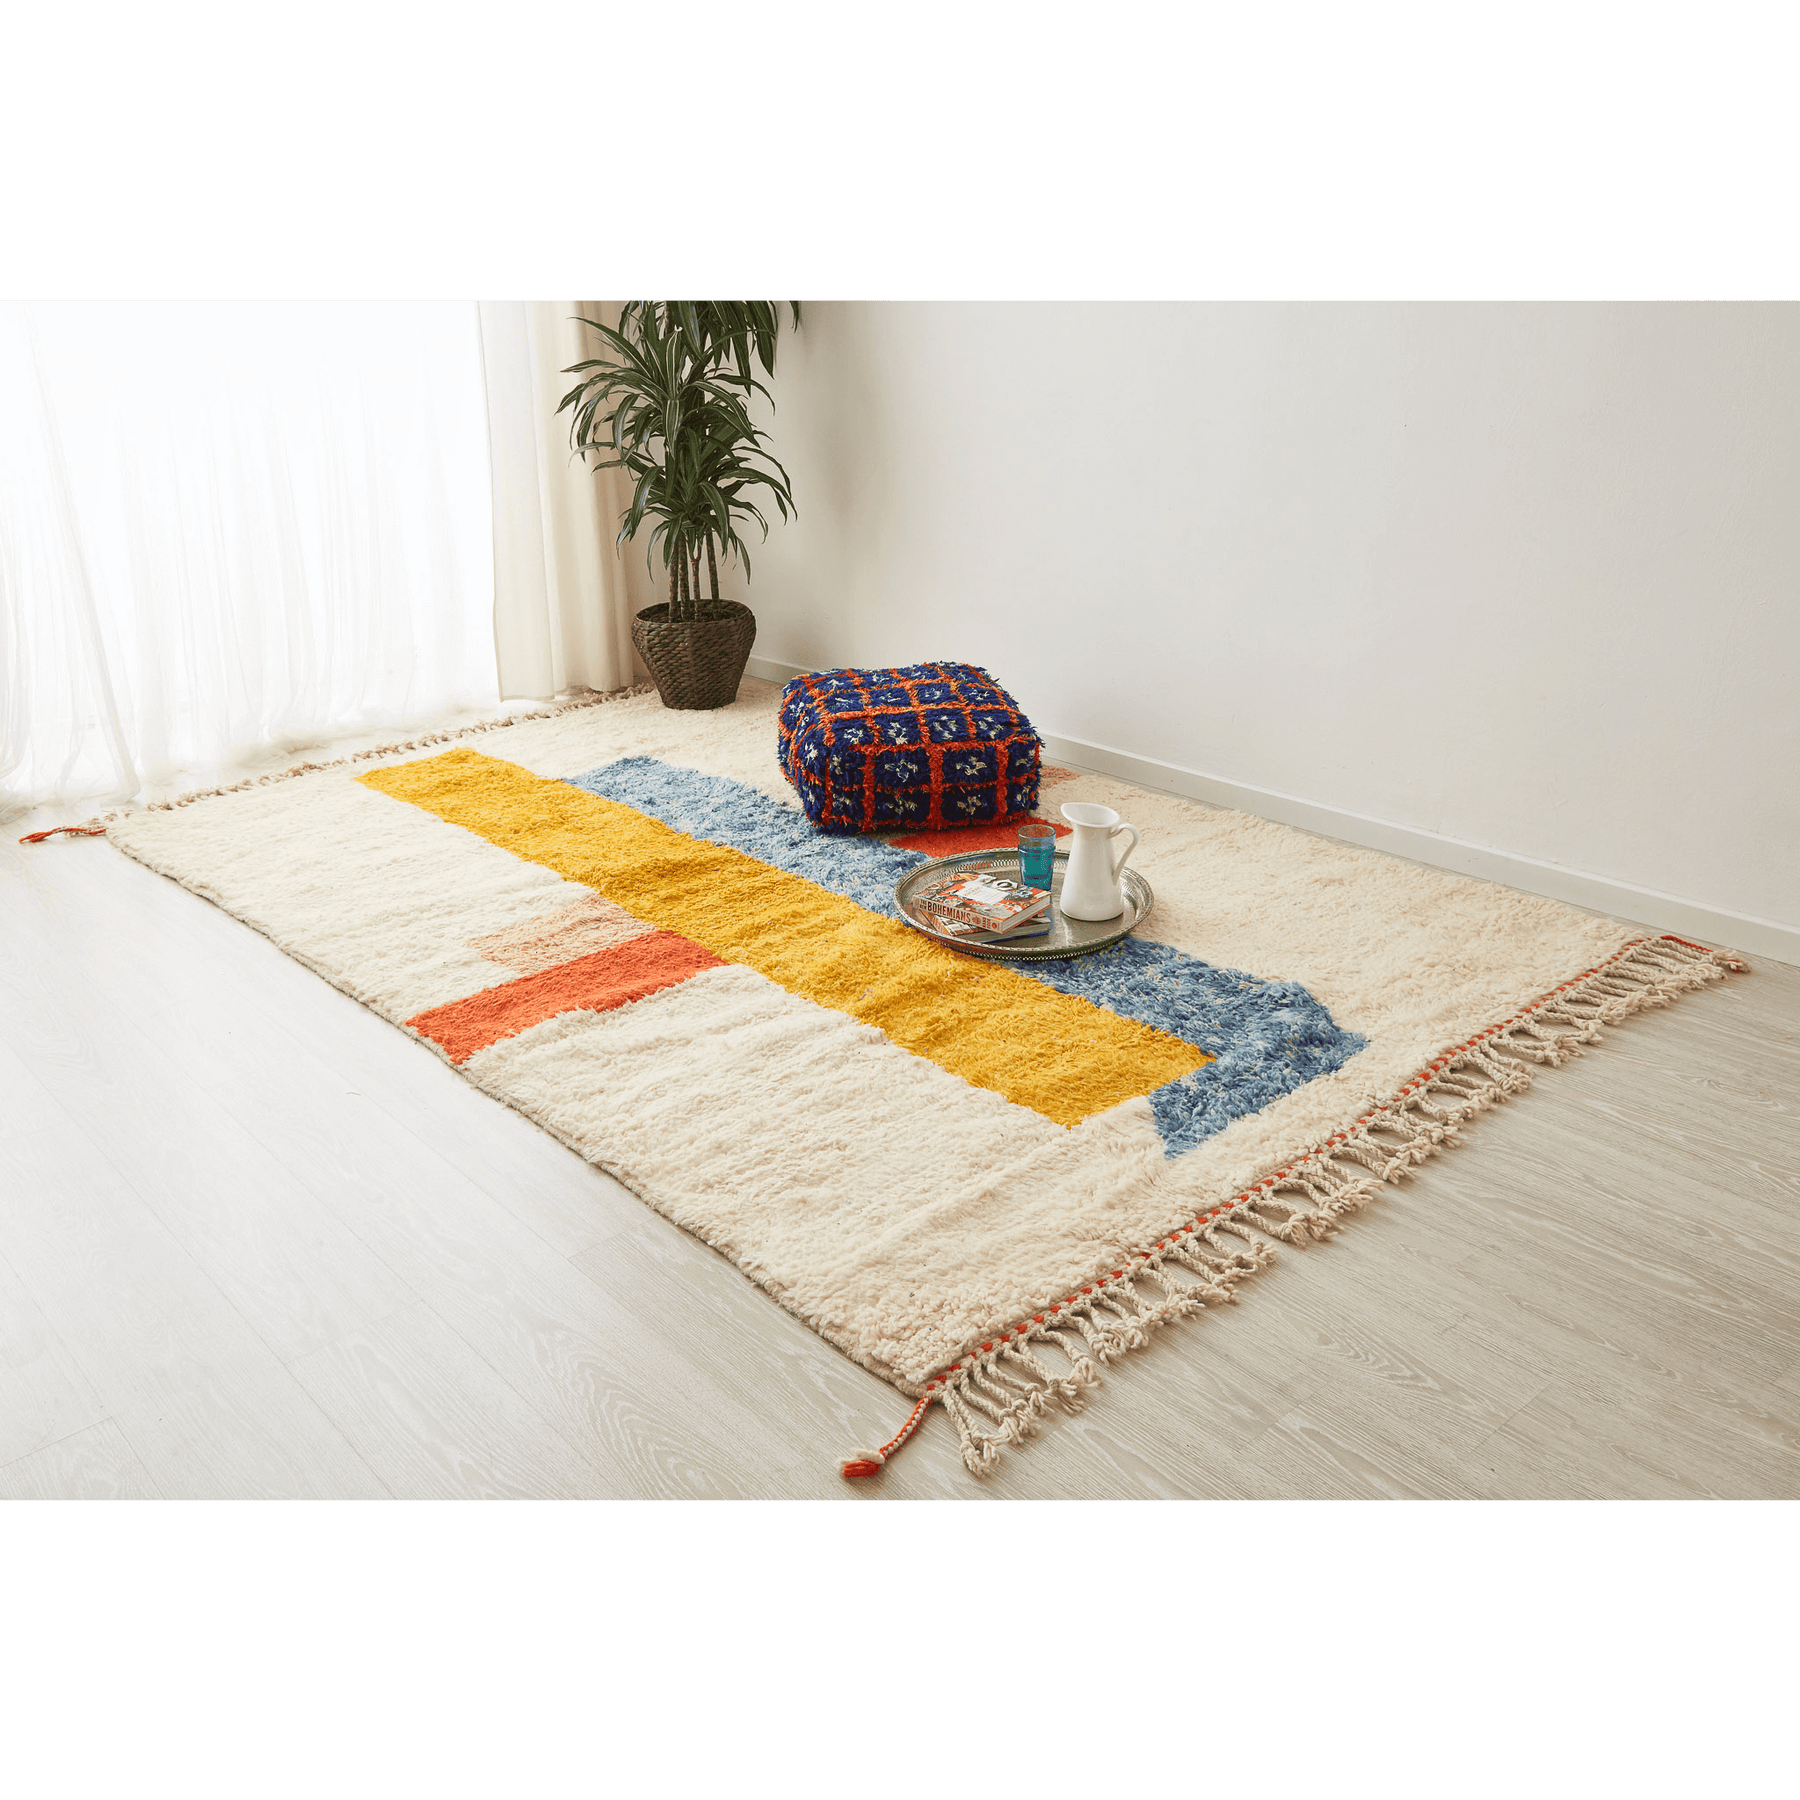 tappeto contemporaneo grande con 3 forme geometriche di diversi colori su base bianca e doppia frangia disteso sul pavimento